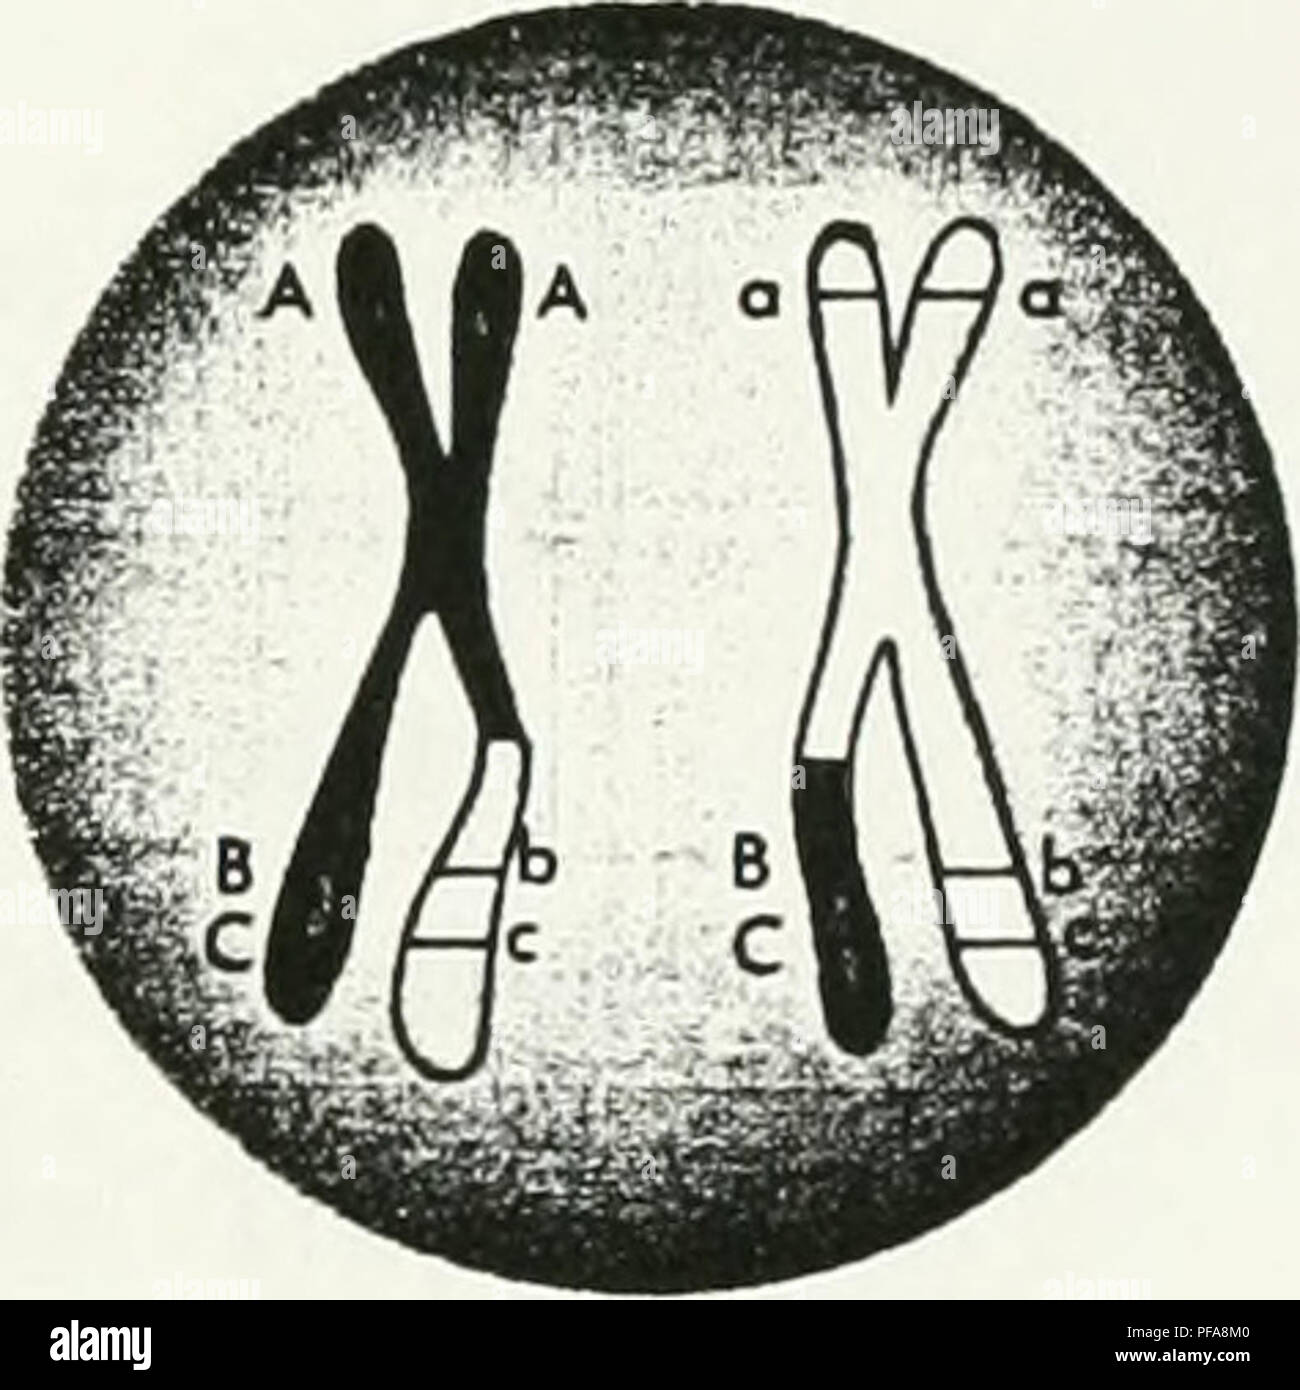 . La elaboración de un mapa de cósmidos del cromosoma 12p13. Sweet Briar College; cromosomas. Reordenamiento de los genes vinculados durante la recombinación. Cruzar los cromosomas tras cruzar la figura 1. Cruzando entre los genes en los cromosomas homólogos. Uno del plan quinquenal (1990-1995) objetivos para el proyecto genoma fue que un redoble mapa genético se completará con marcadores, identificado por sitios Sequence-Tagged, espaciadas de 2 a 5 cm. Este objetivo fue más que ftilfilled con un mapa de densidad de 0,7 cM.^'' se usaron mapas genéticos para descubrir cinco regiones independientes que desempeñan un papel en la insulino-dependiente di Foto de stock